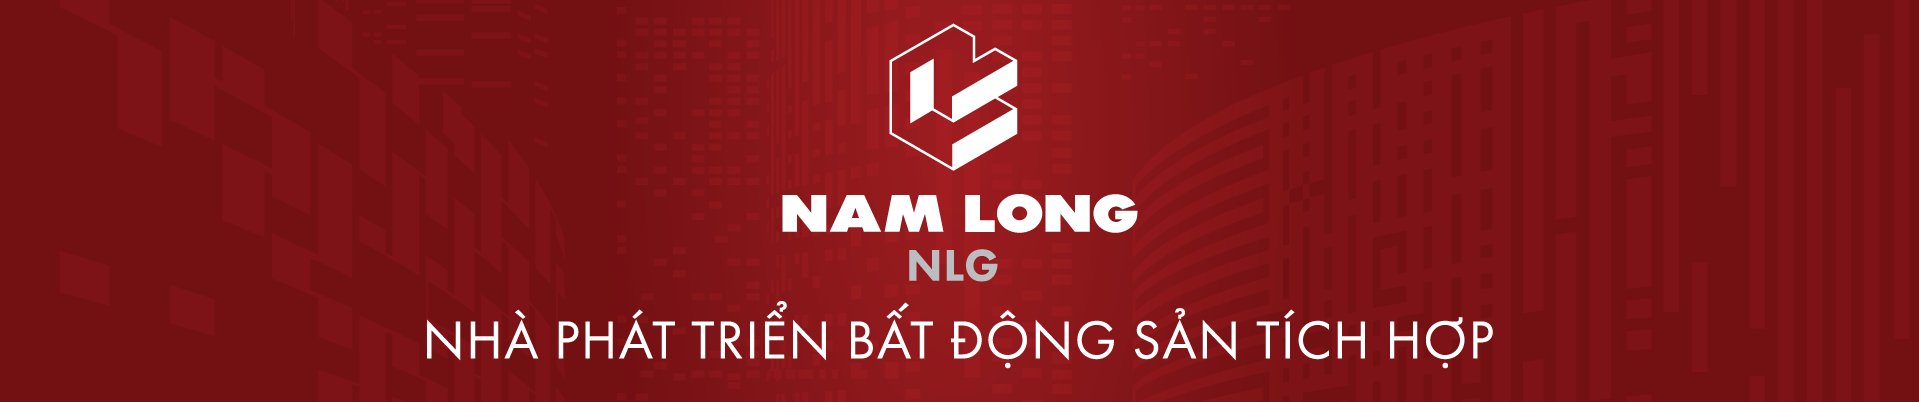 Nam Long (HOSE: NLG) giữ vững “phong độ” tại bảng xếp hạng 50 Công ty niêm yết tốt nhất Việt Nam 2022